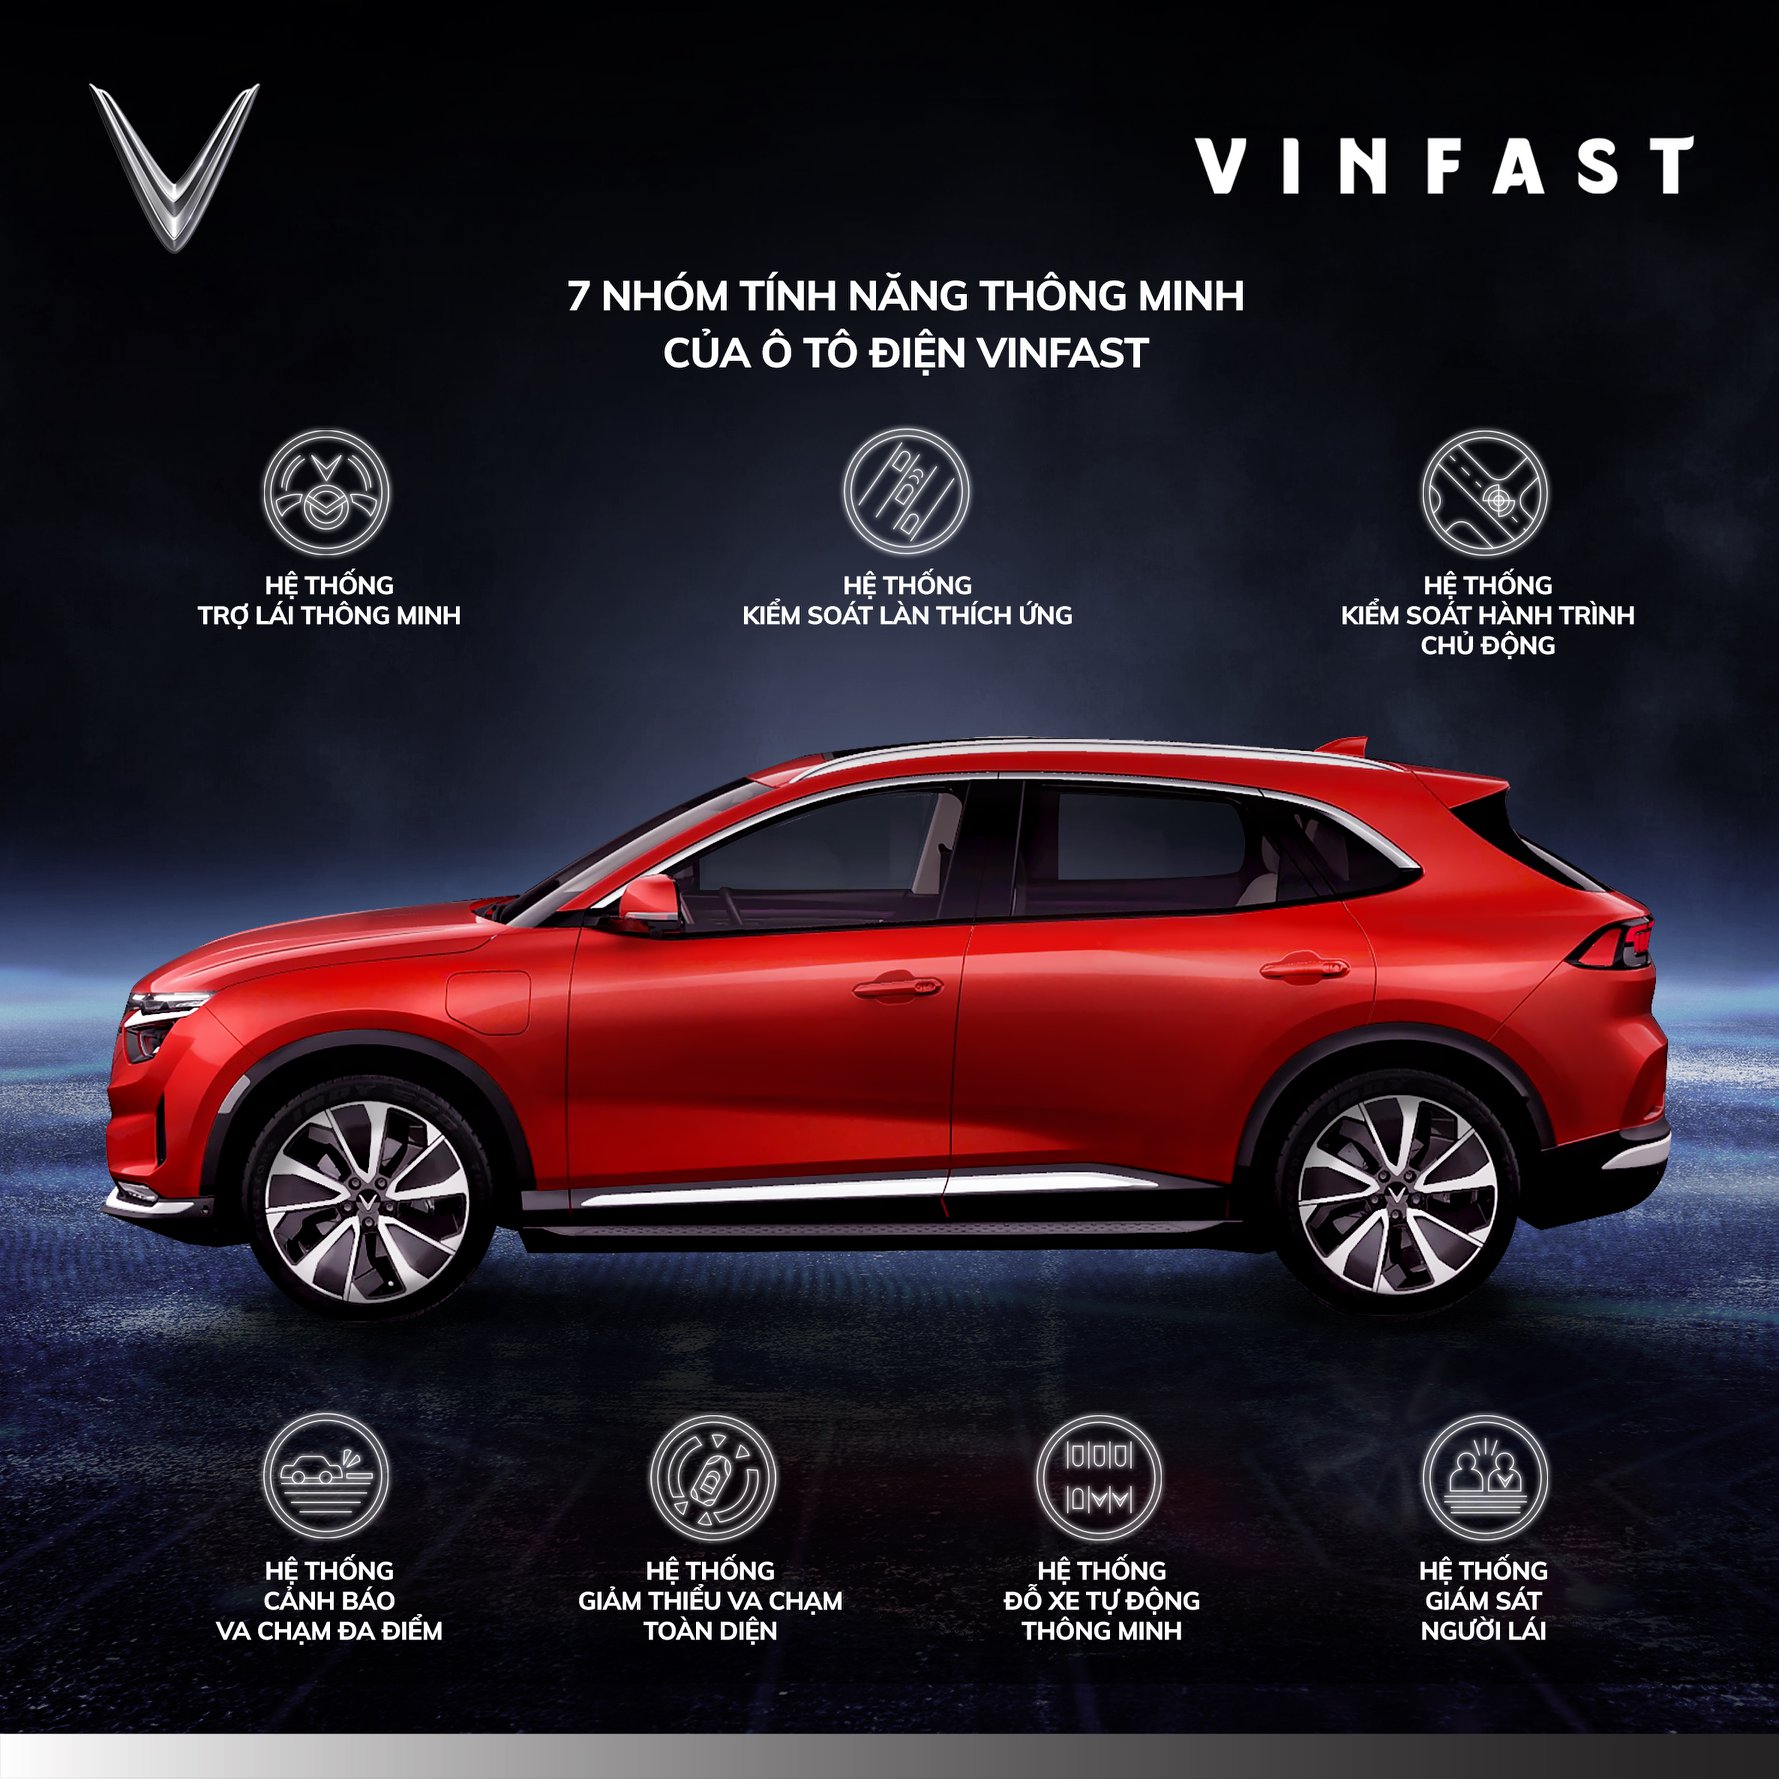 Bóc tách công nghệ tự lái trên 3 xe VinFast mới sắp bán tại Việt Nam: 30 tính năng xếp thành 7 nhóm, có thể thả tay không cần lái - Ảnh 1.